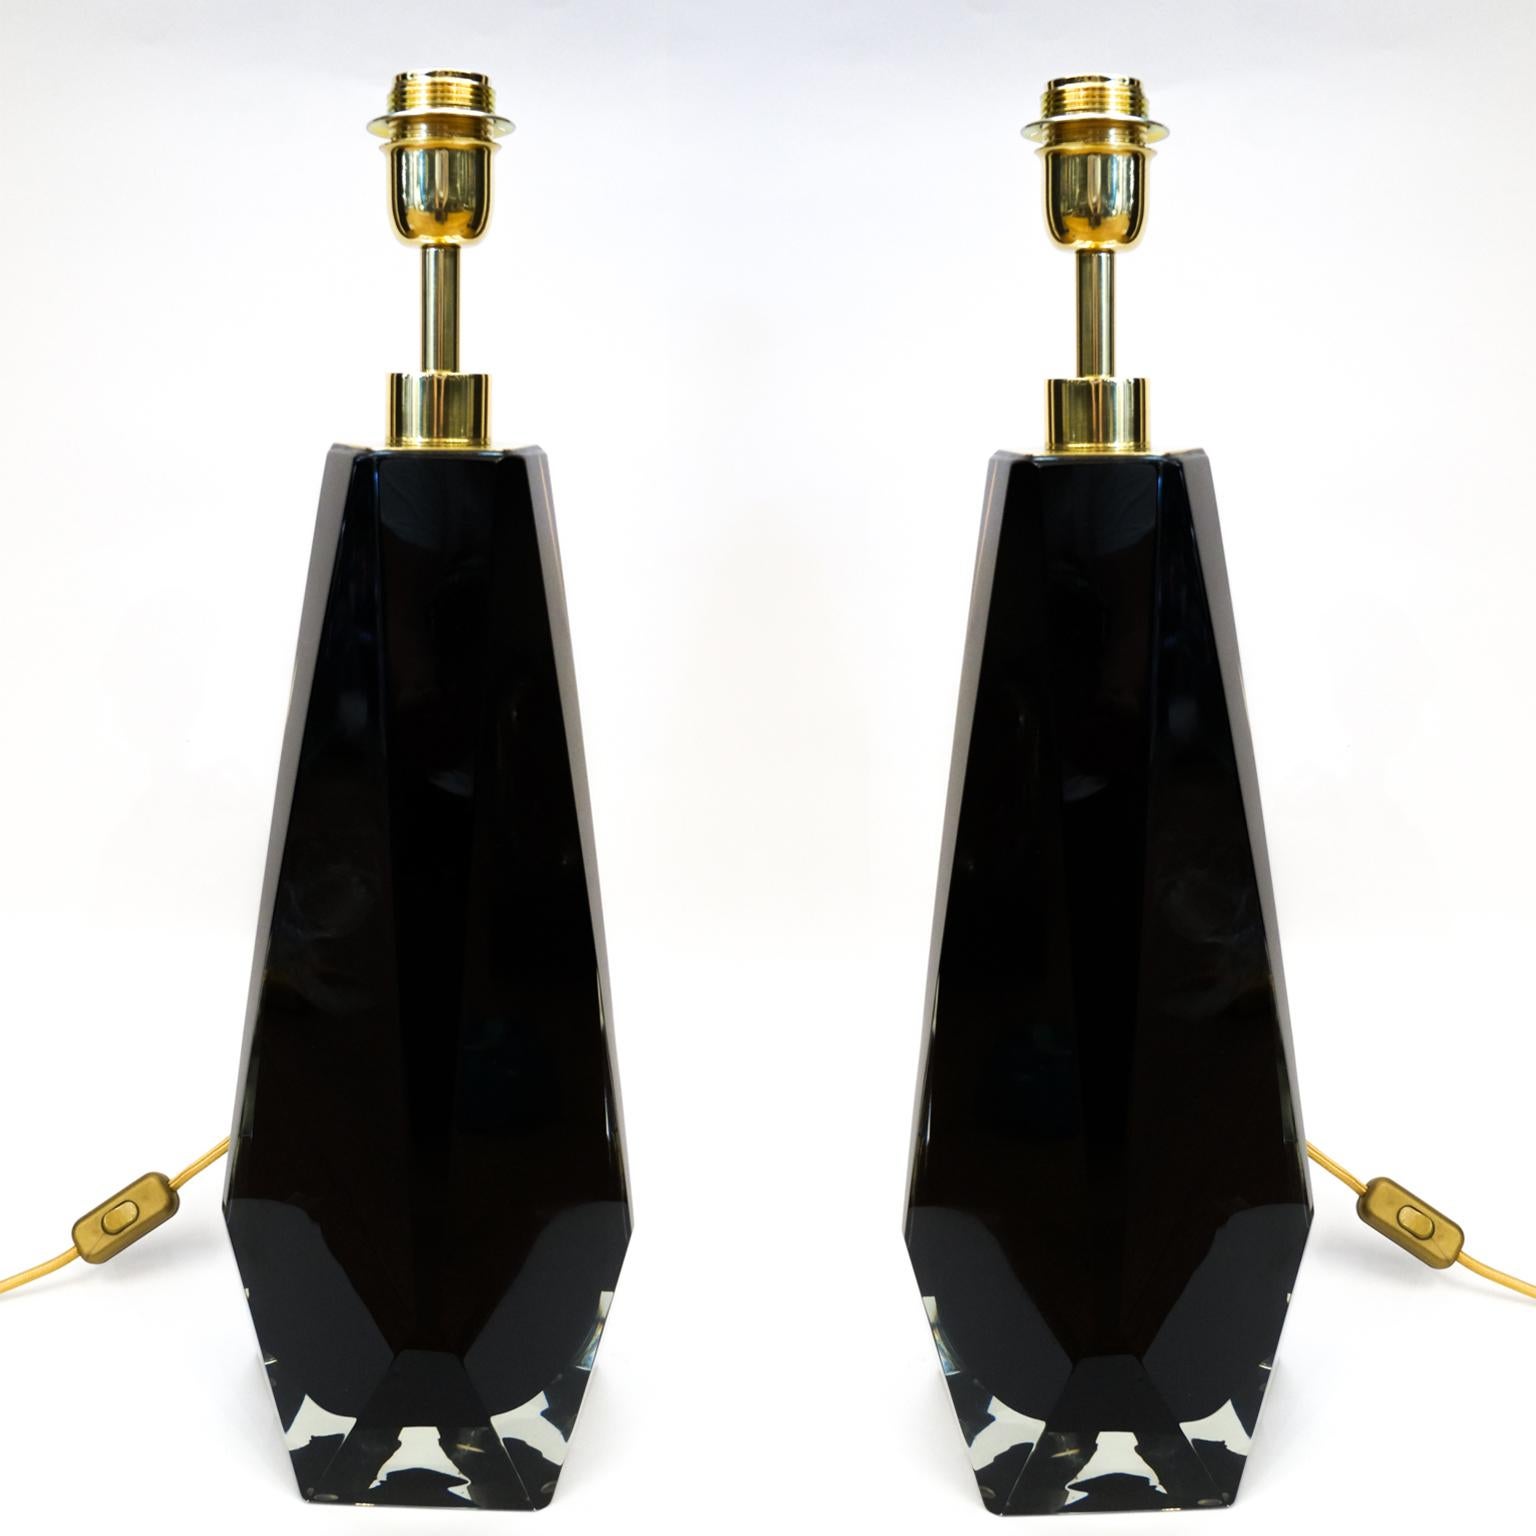 Cette lampe de table fait partie de la collection du maître verrier Alberto Donà qui comprend trois lampes de tailles différentes appelées 